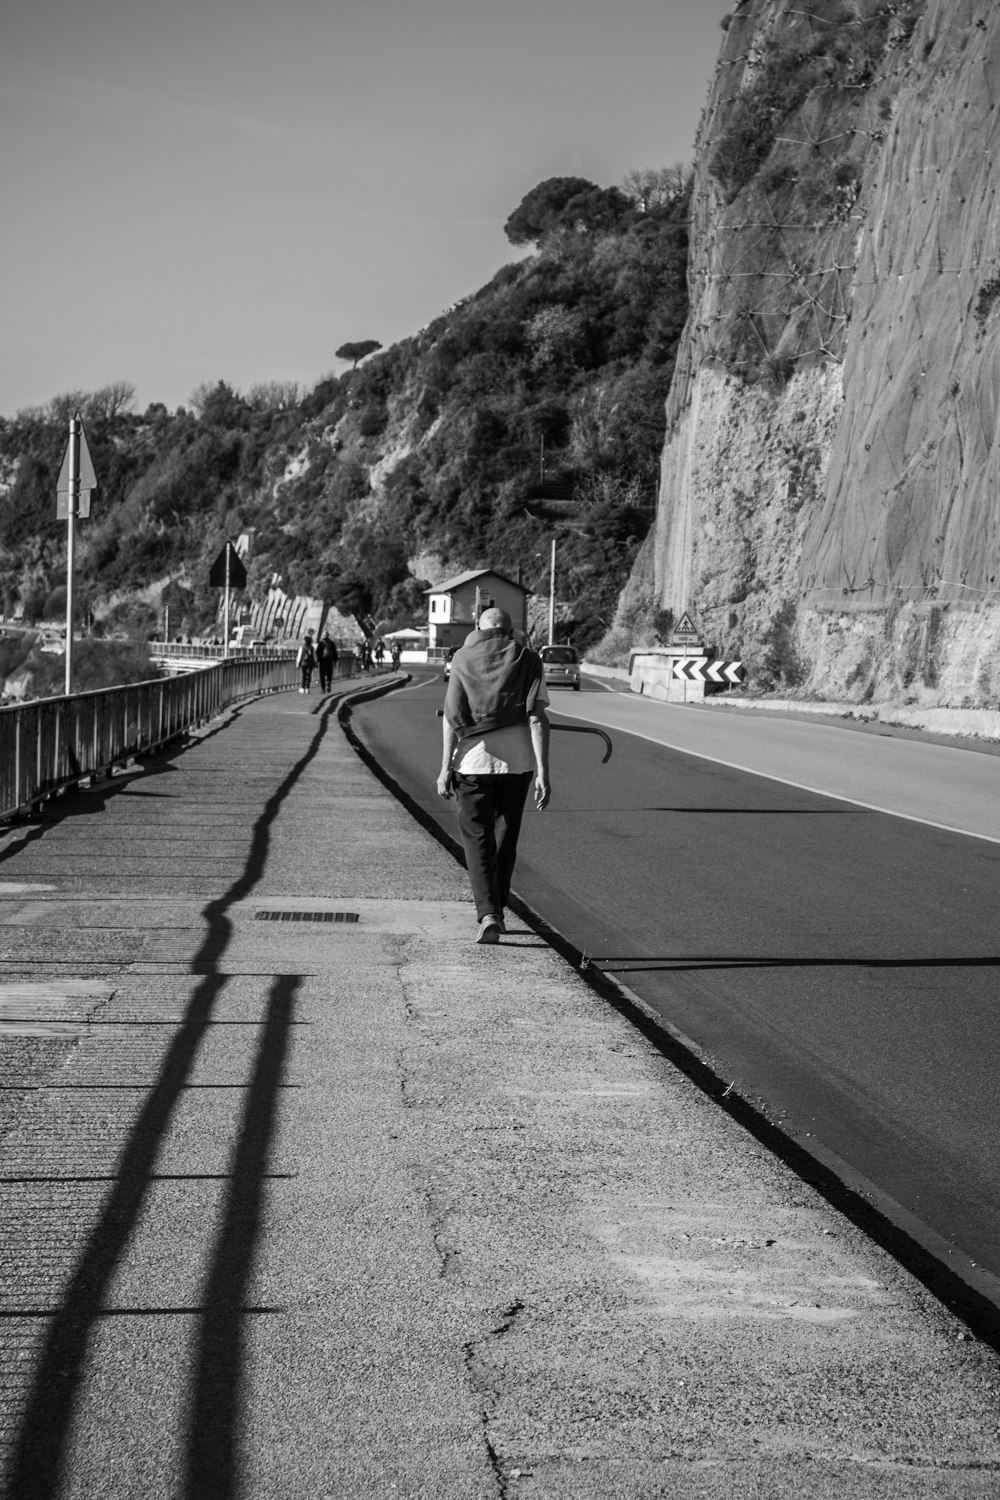 Una foto en blanco y negro de una persona caminando por una carretera